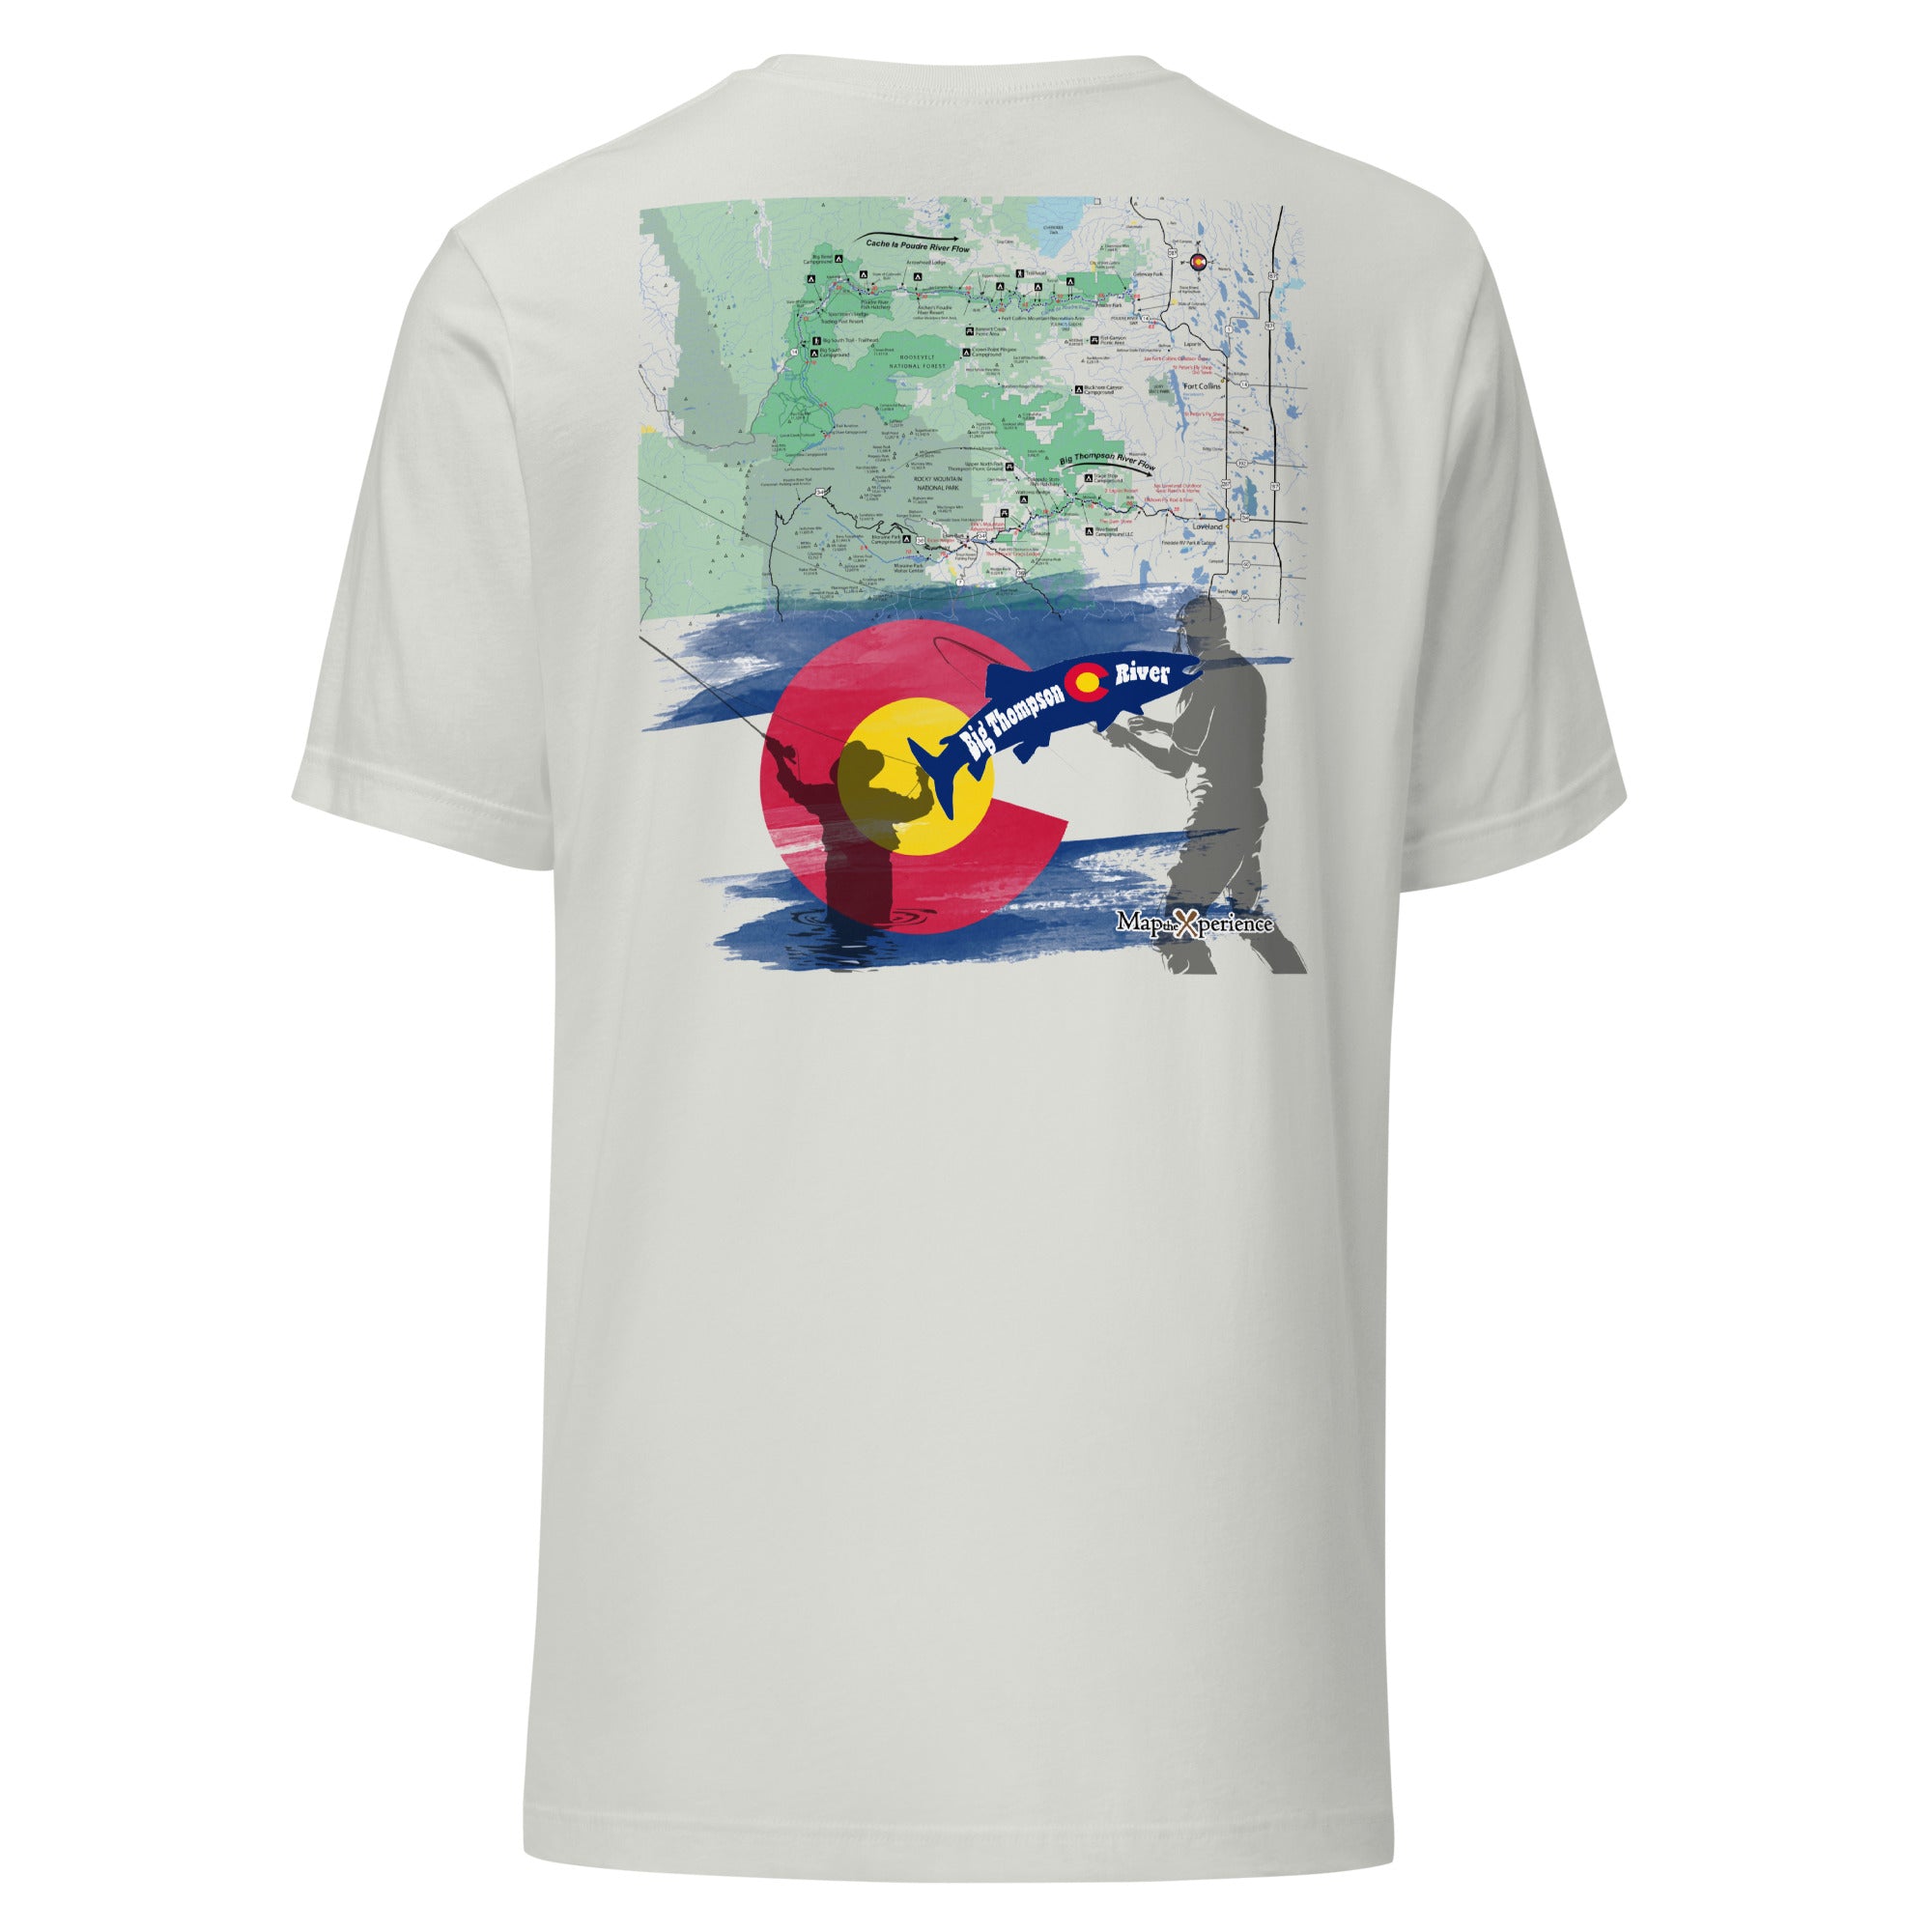 Big Thompson River, Colorado Performance t-shirt